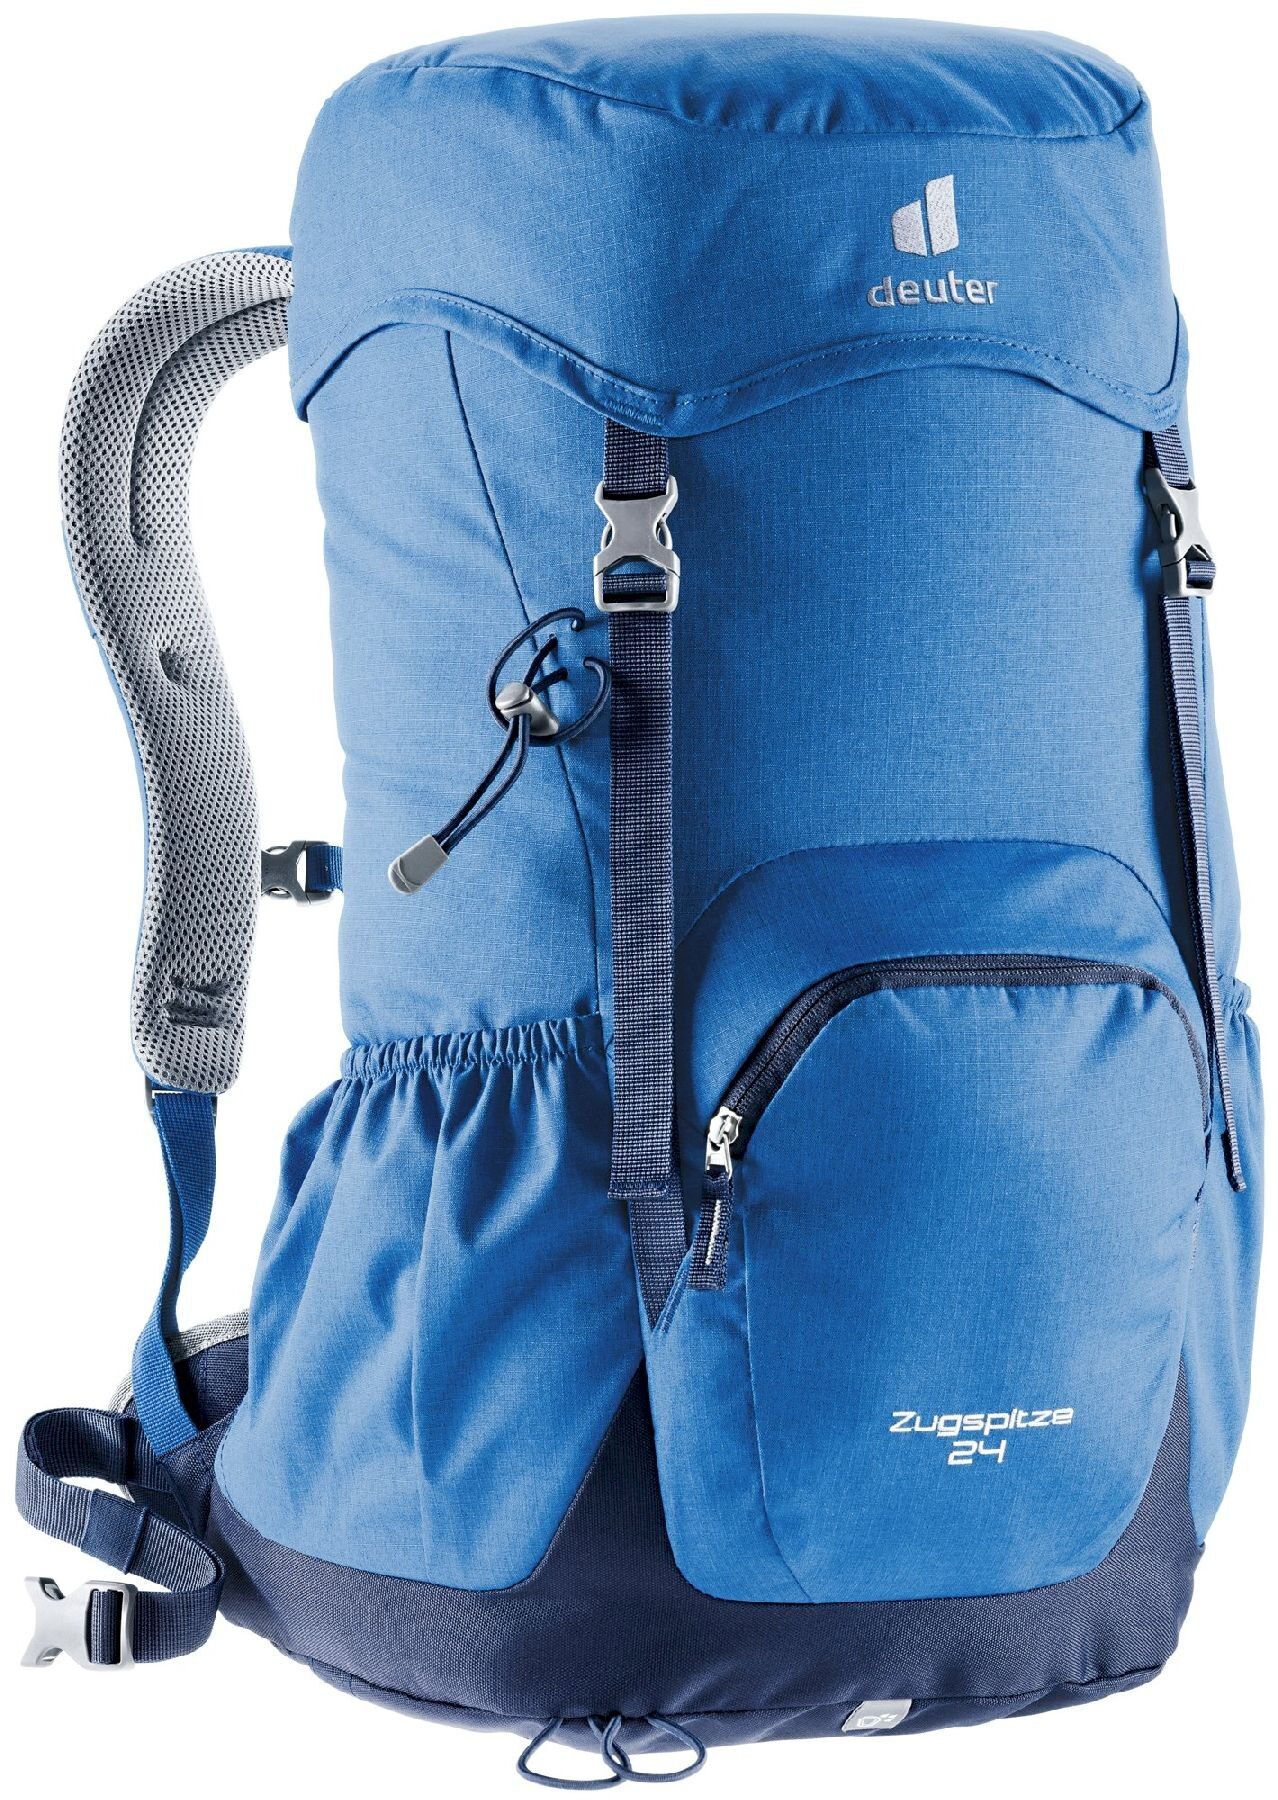 Deuter Zugspitze 24 - Walking backpack - Men's